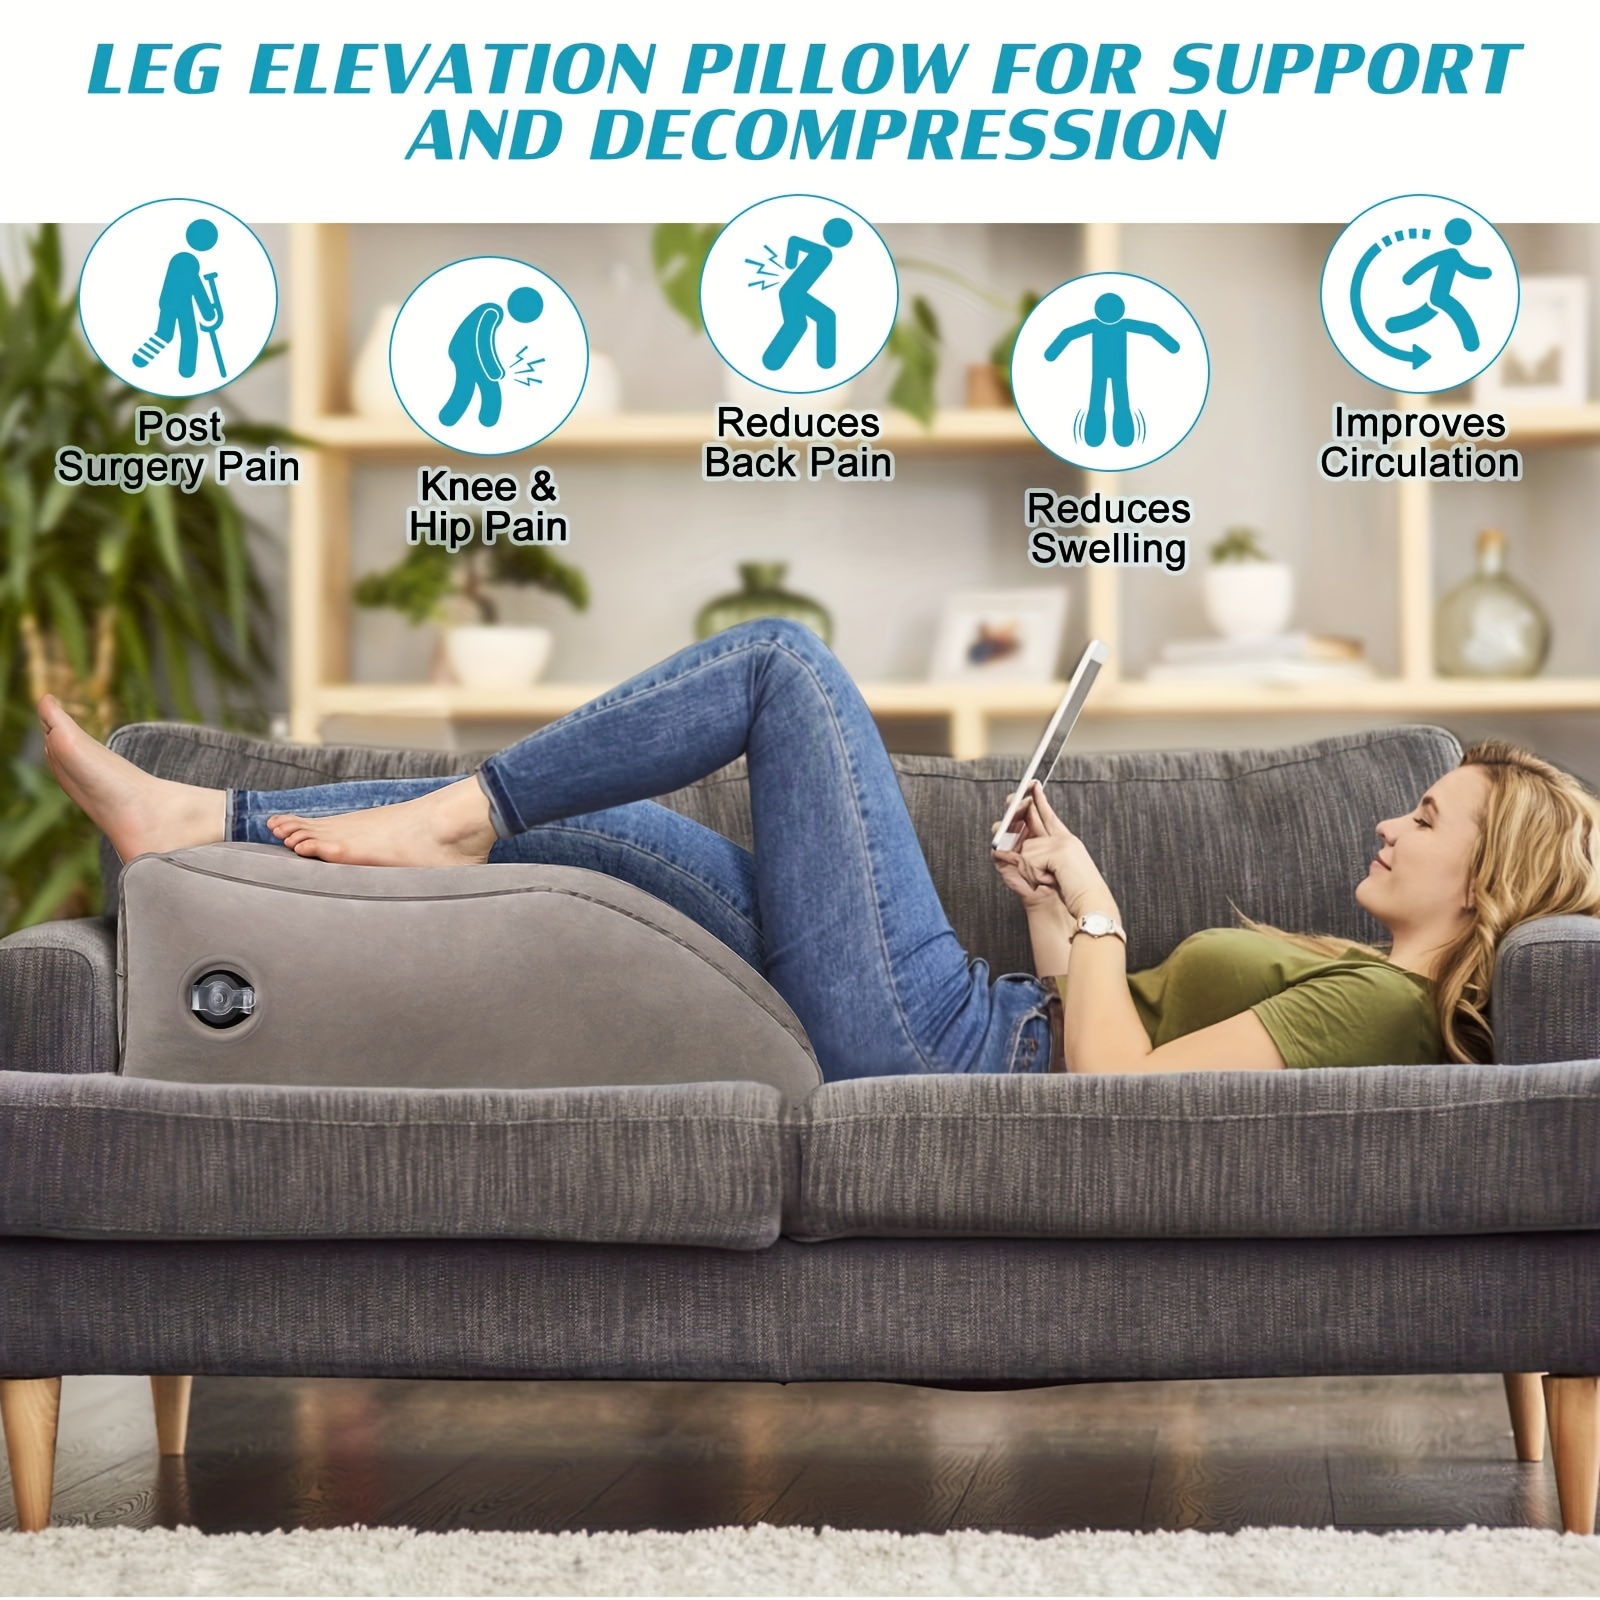 Leg Elevation Pillow for Leg/Knee Surgery Recovery, Memory Foam Leg Support  Pill